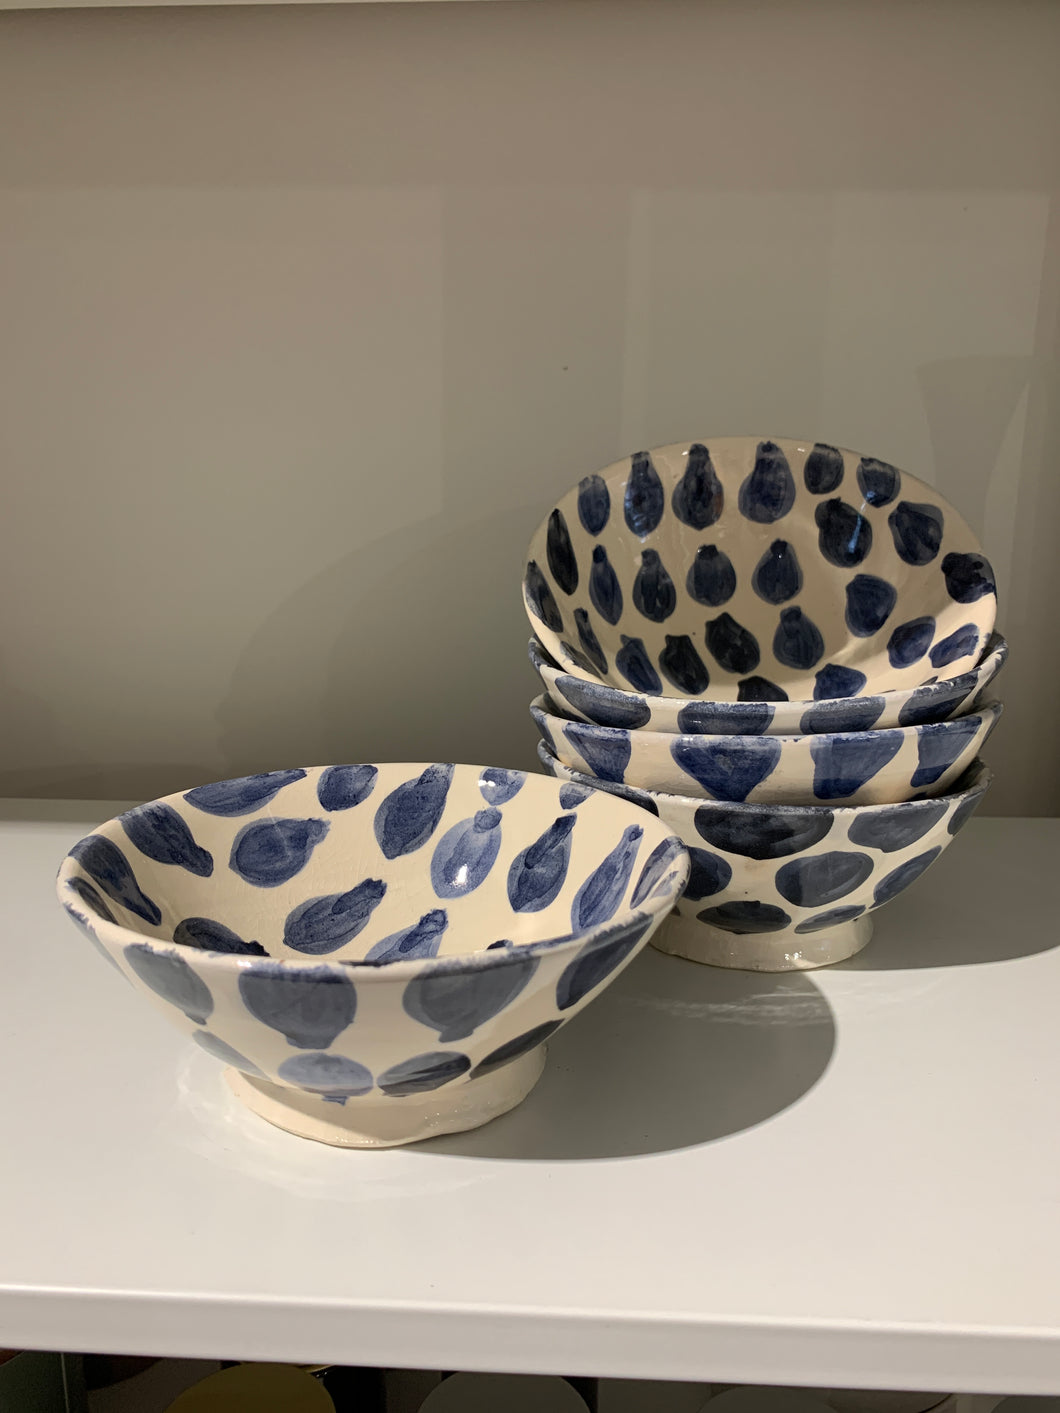 Maroc Ceramics - Pear drop bowl 15cm